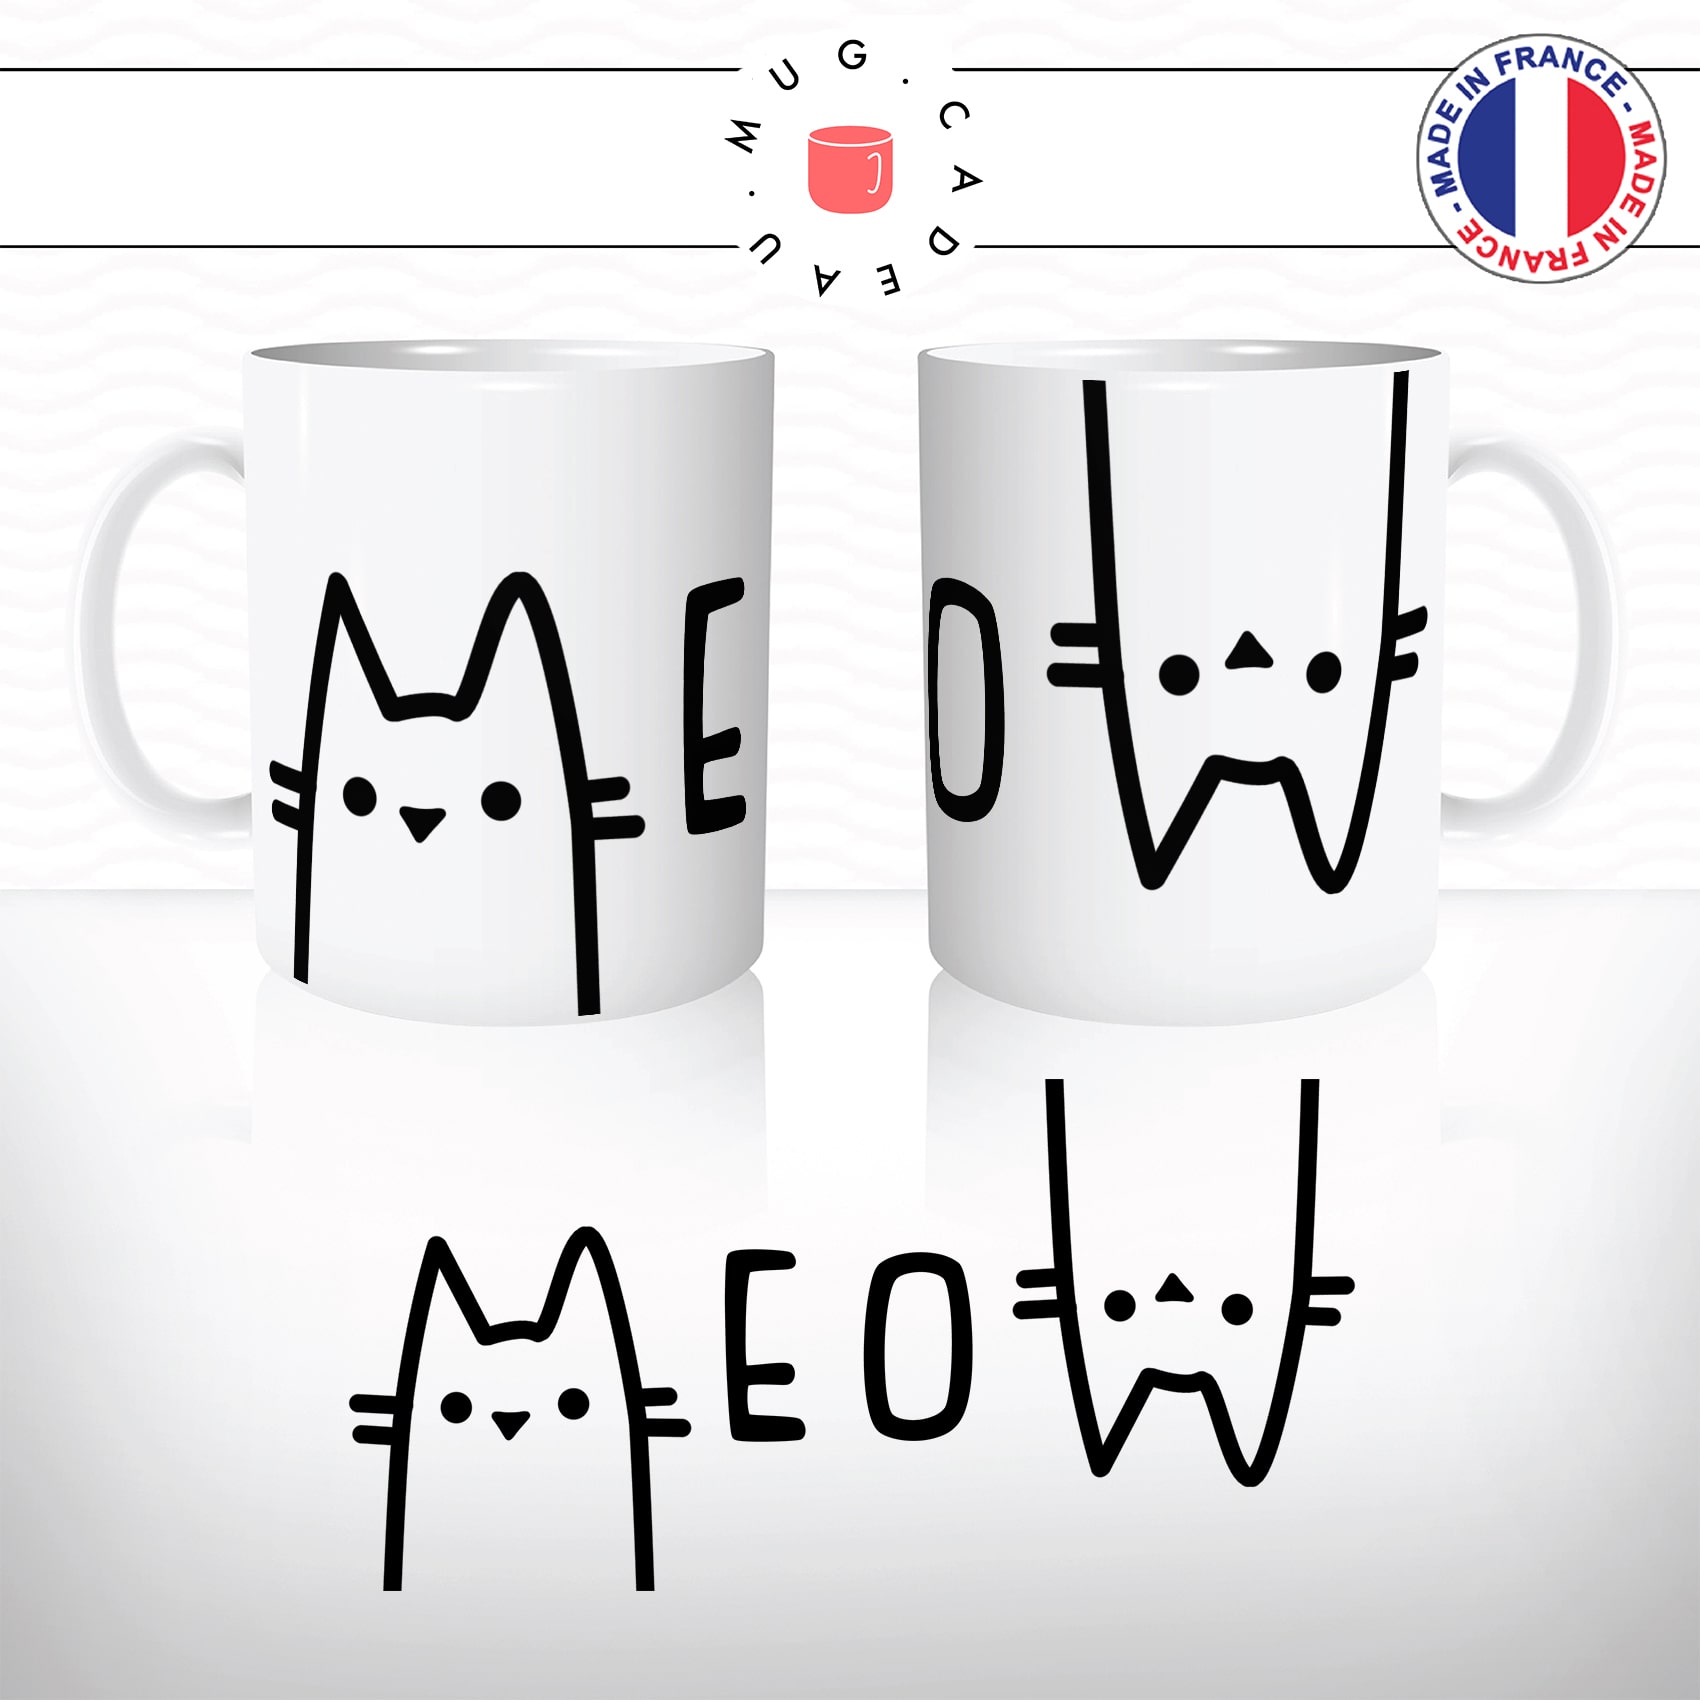 mug-tasse-animal-biche-chats-chatons-meow-miaou-drole-mignon-dessin-animé-classique-culte-cool-fun-mugs-tasses-café-thé-idée-cadeau-original-personnalisé-personnalisable